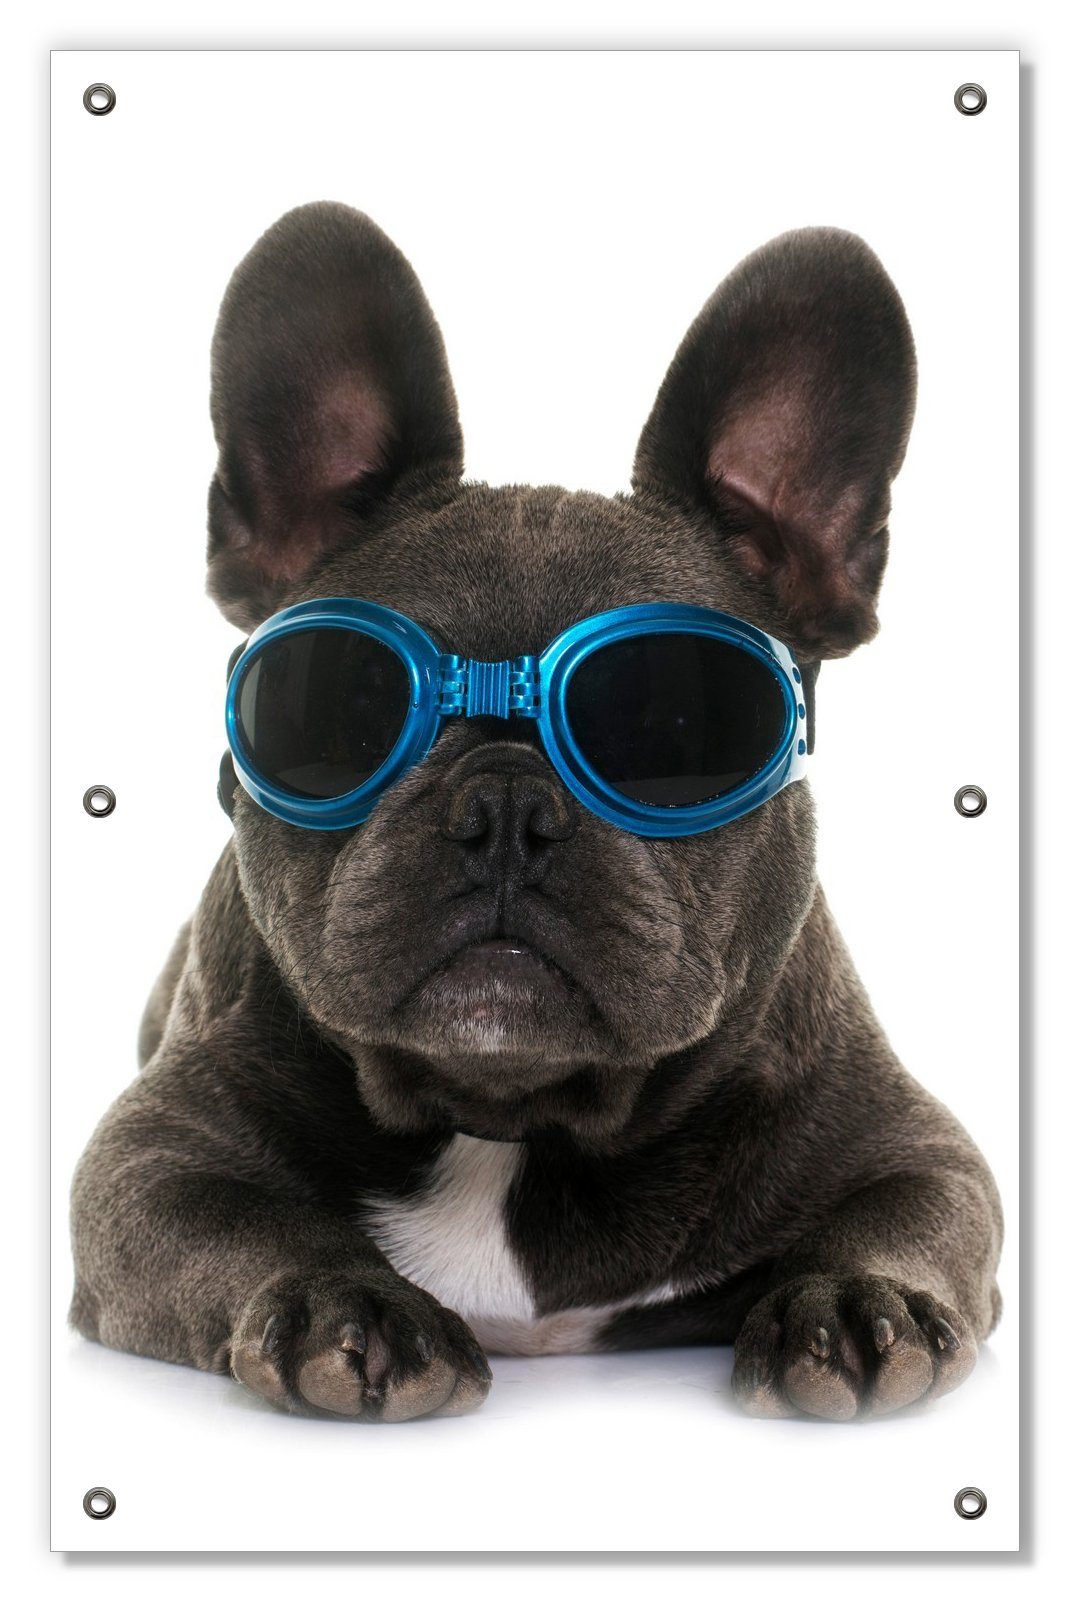 Sonnenschutz Cooler - wiederablösbar wiederverwendbar blau Sonnenbrille Saugnäpfen, mit blickdicht, und in Wallario, mit Französische Bulldogge, Hund